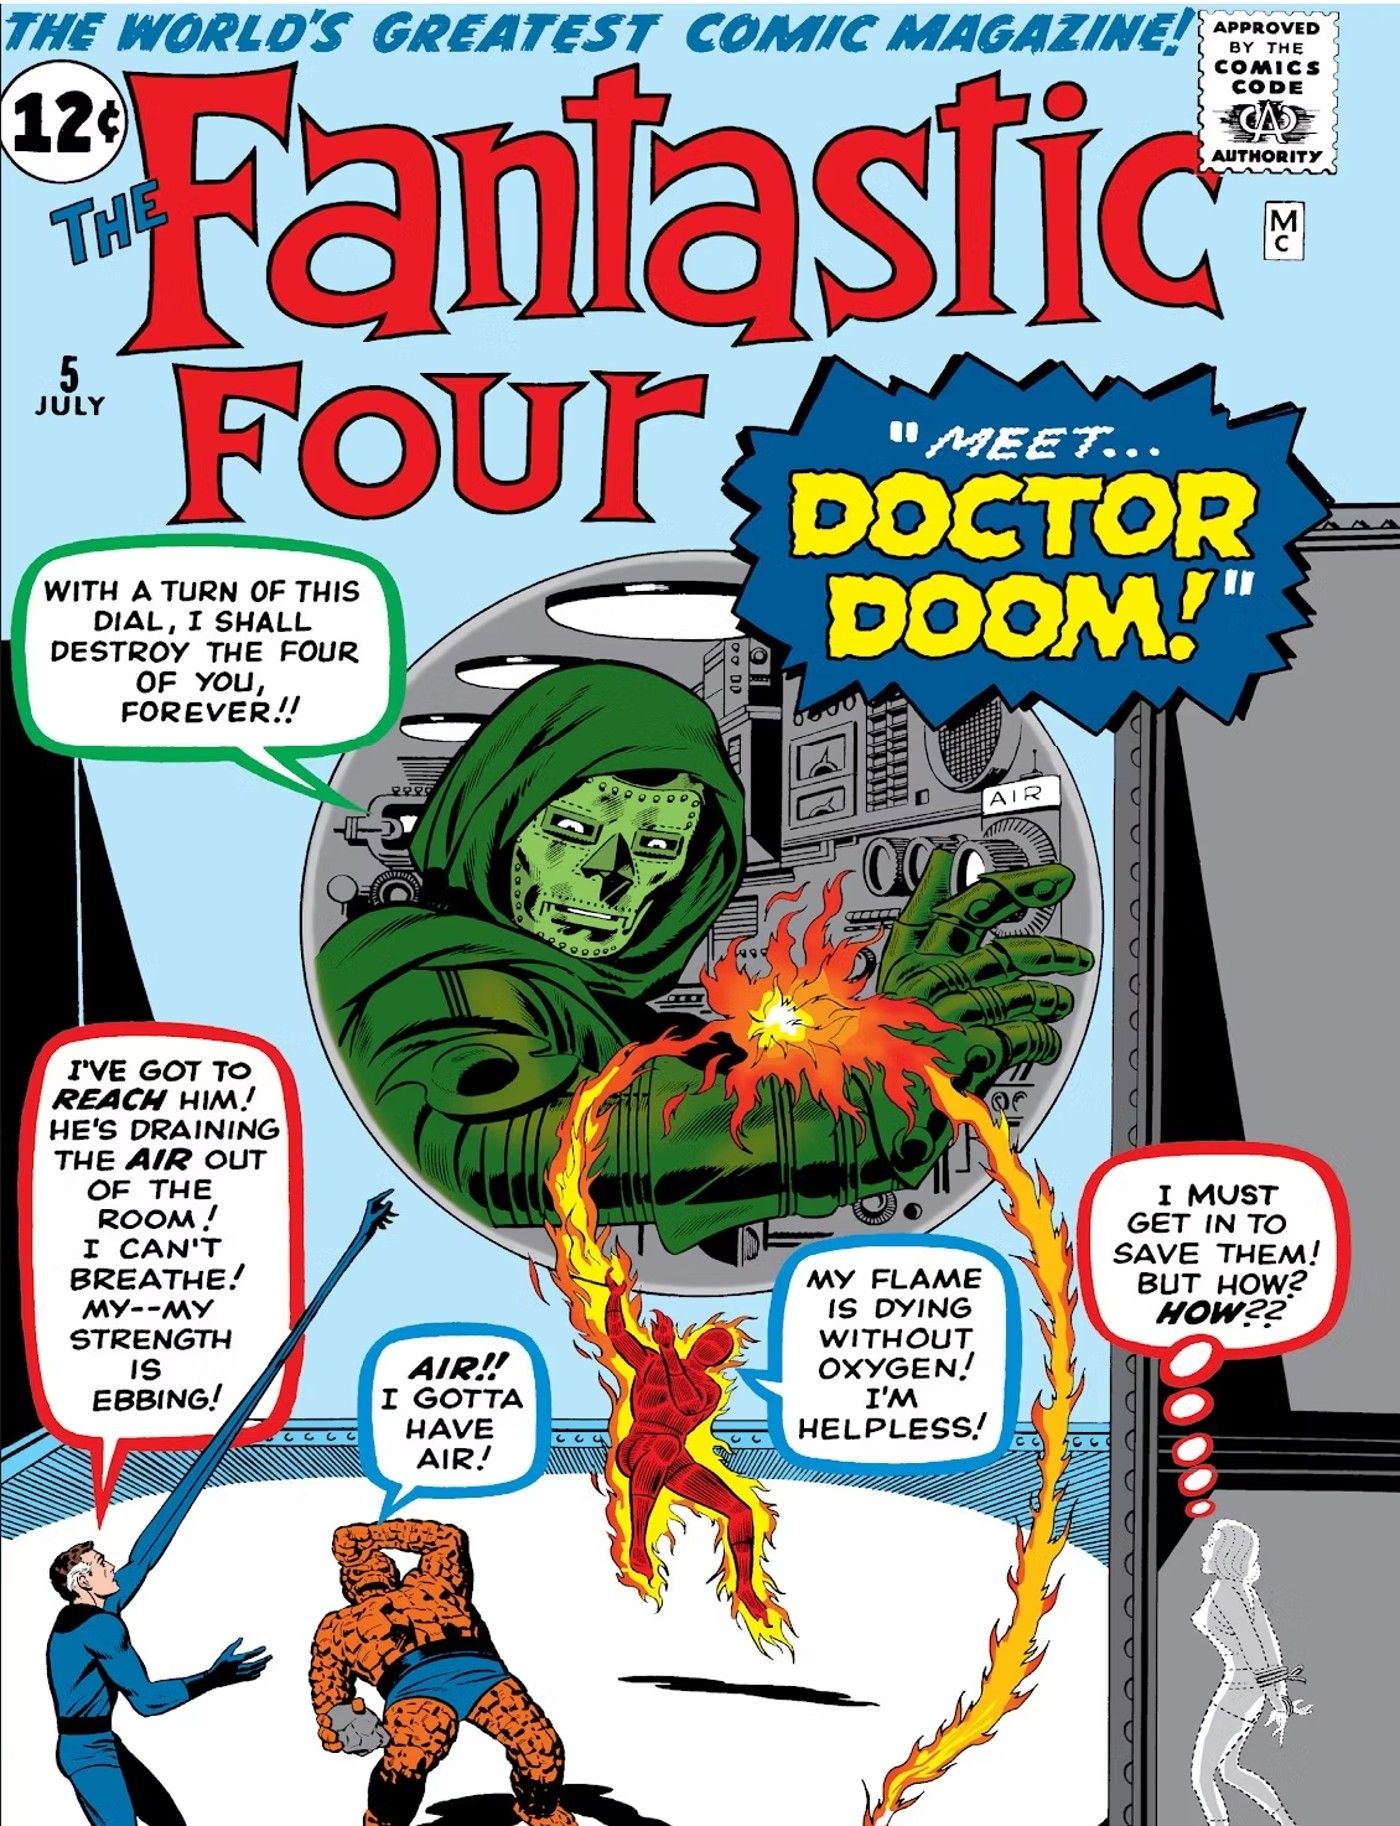 Los Cuatro Fantásticos 5 Portada Doctor Doom Primera aparición